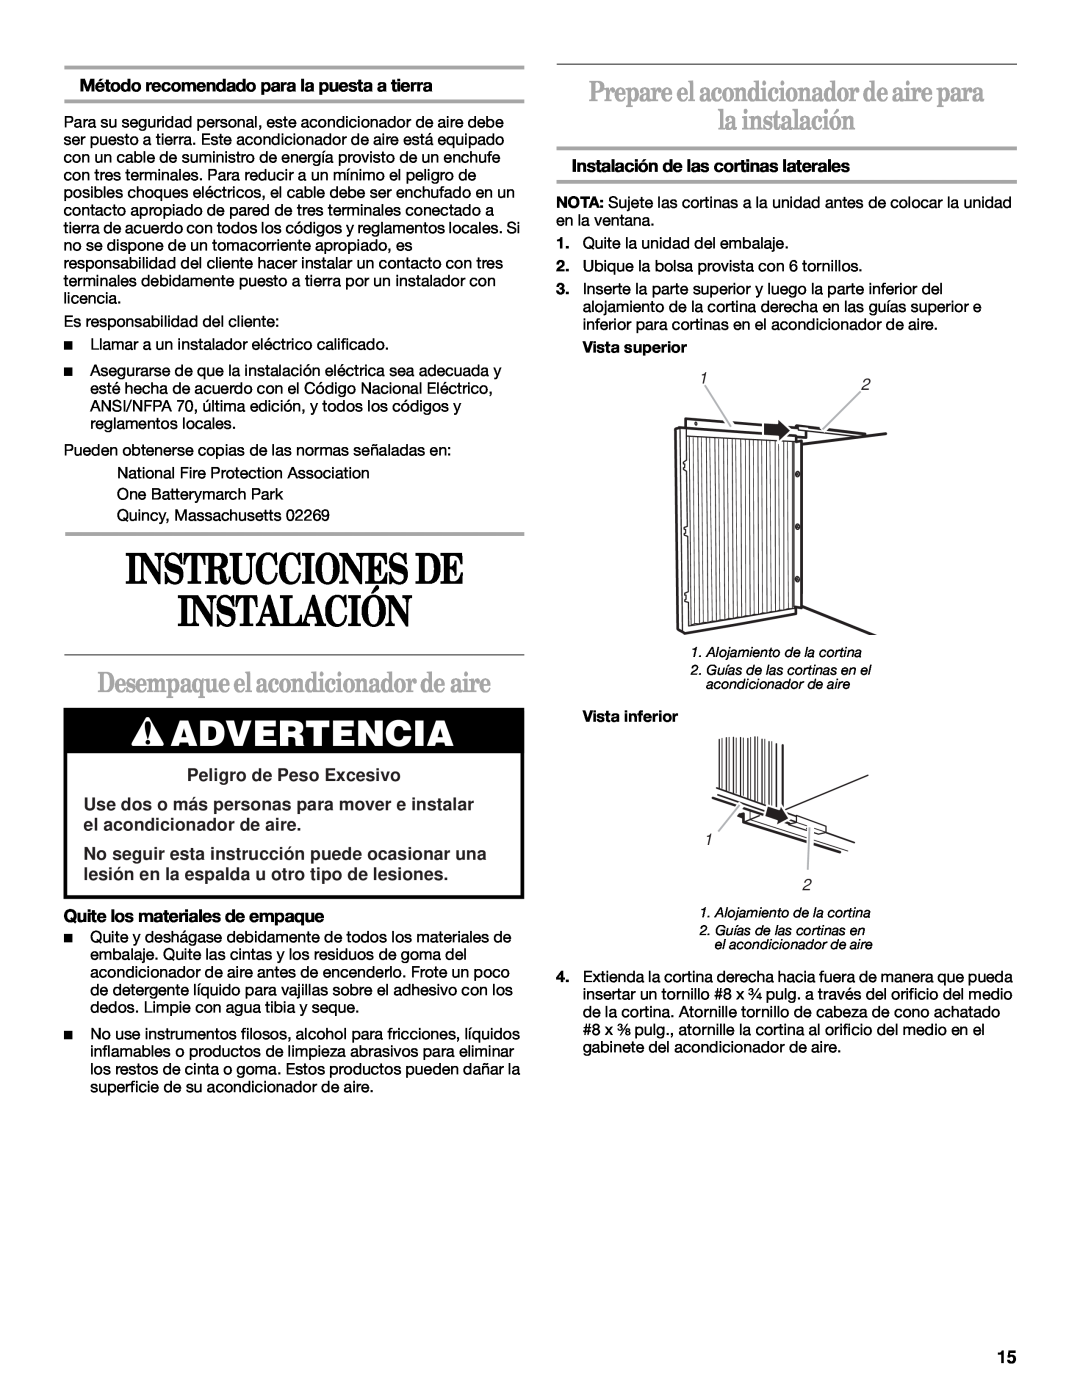 Whirlpool ACQ062MP0 manual Instrucciones De Instalación, Desempaque el acondicionador de aire, la instalación, Advertencia 